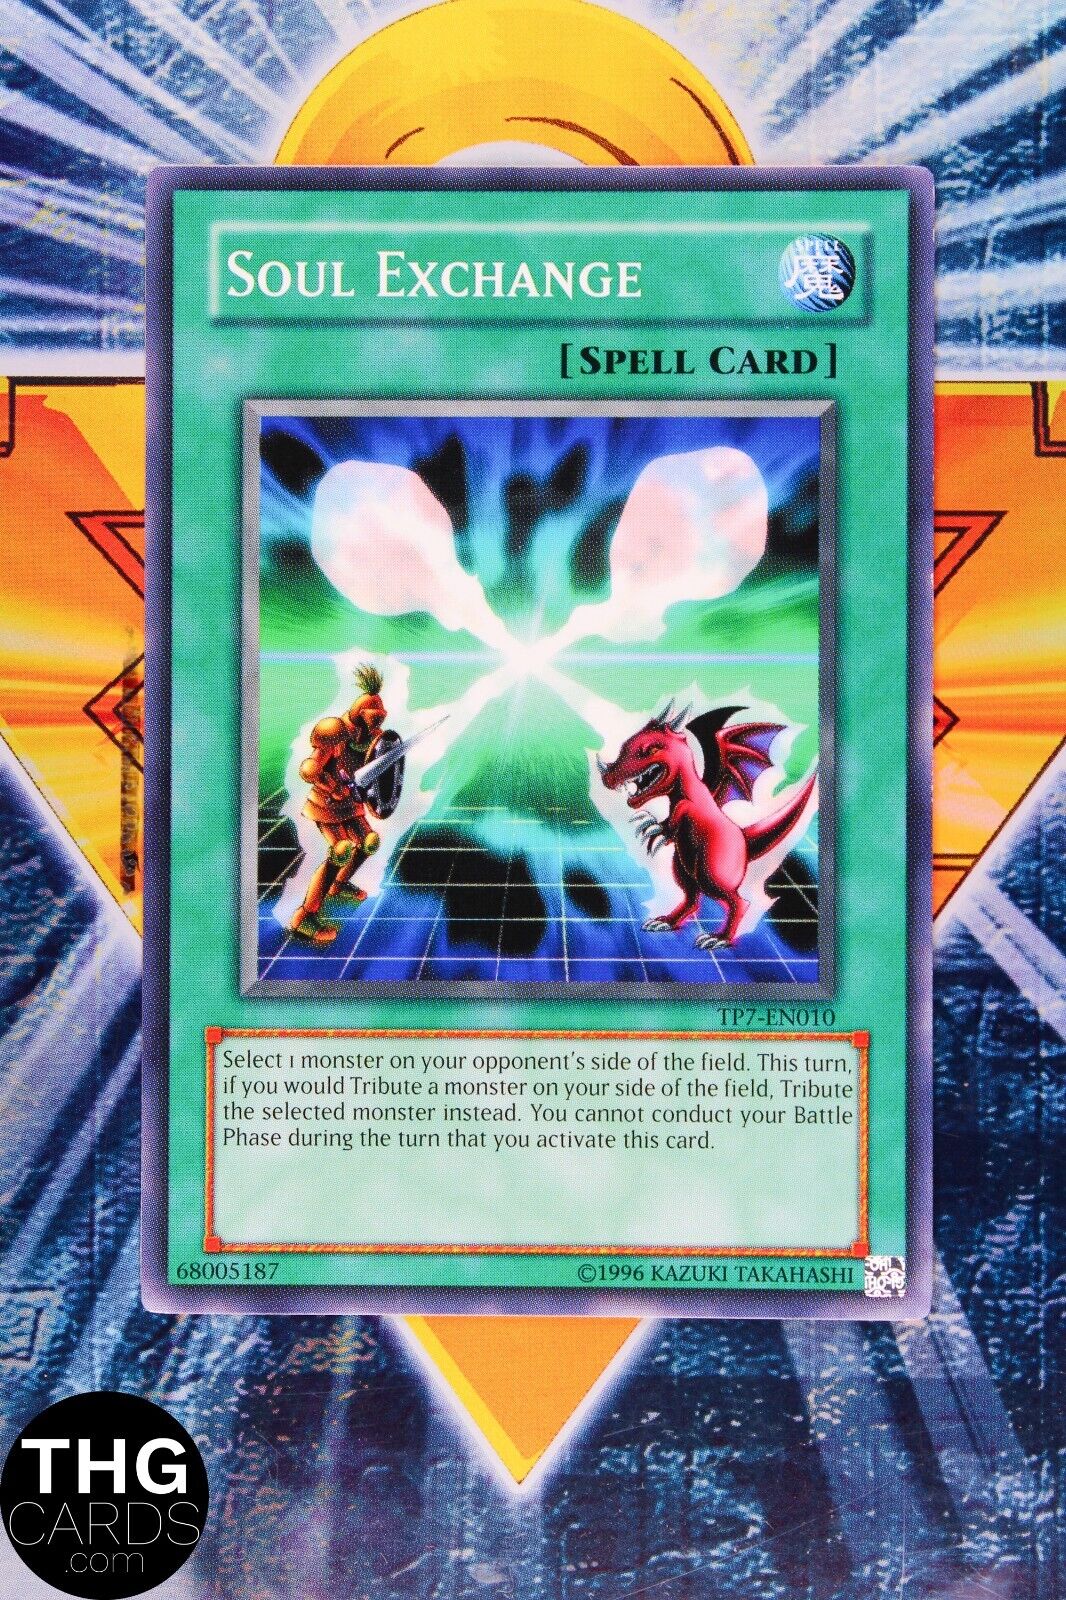 Soul Exchange TP7-EN010 Common Yugioh Card